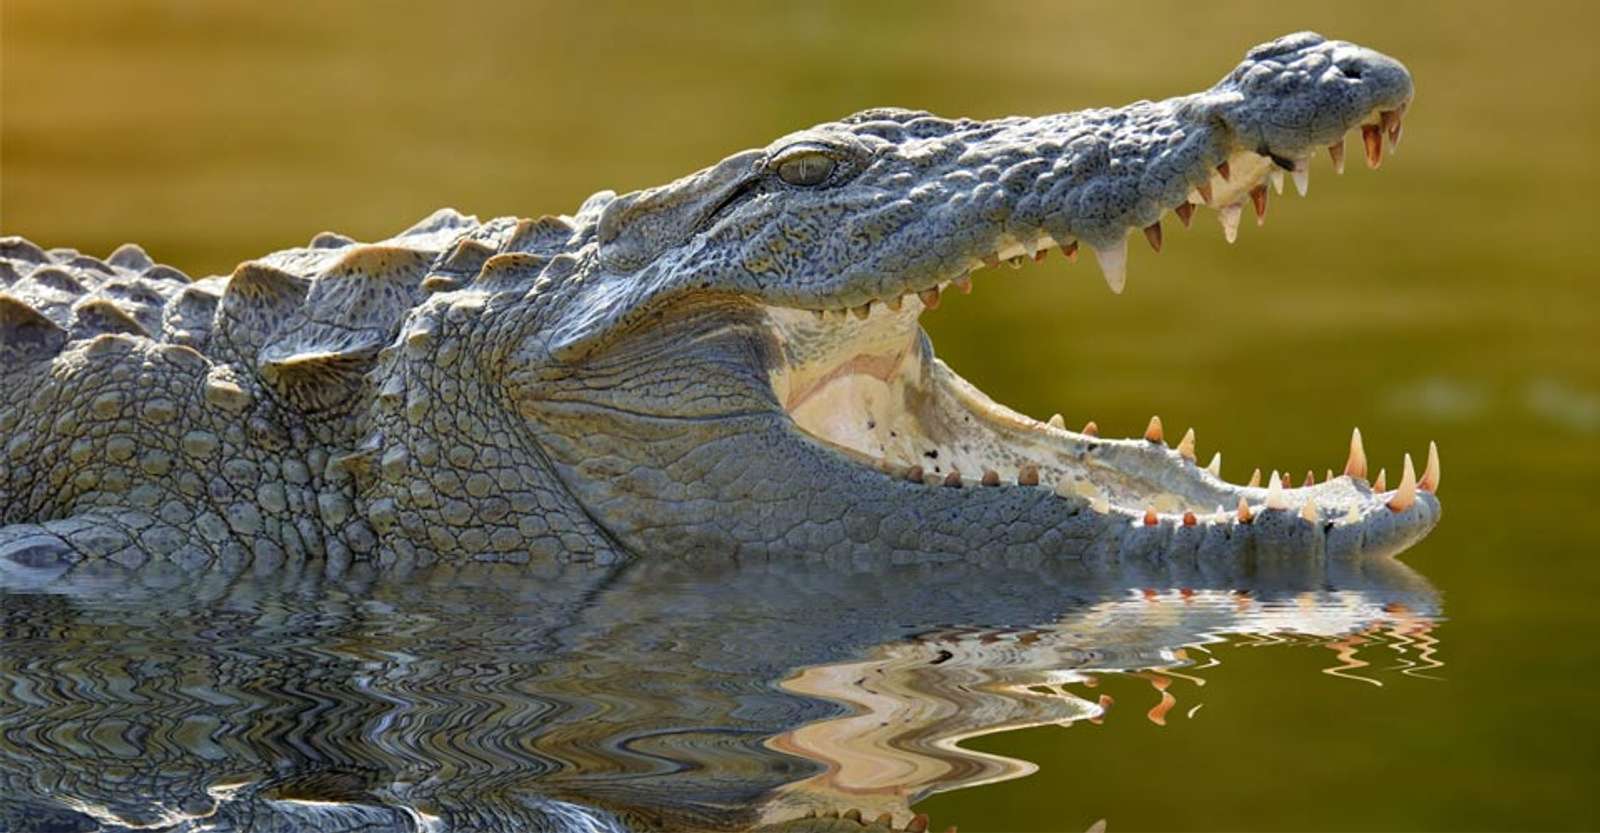 Mugger crocodile, Yala National Park, Sri Lanka.